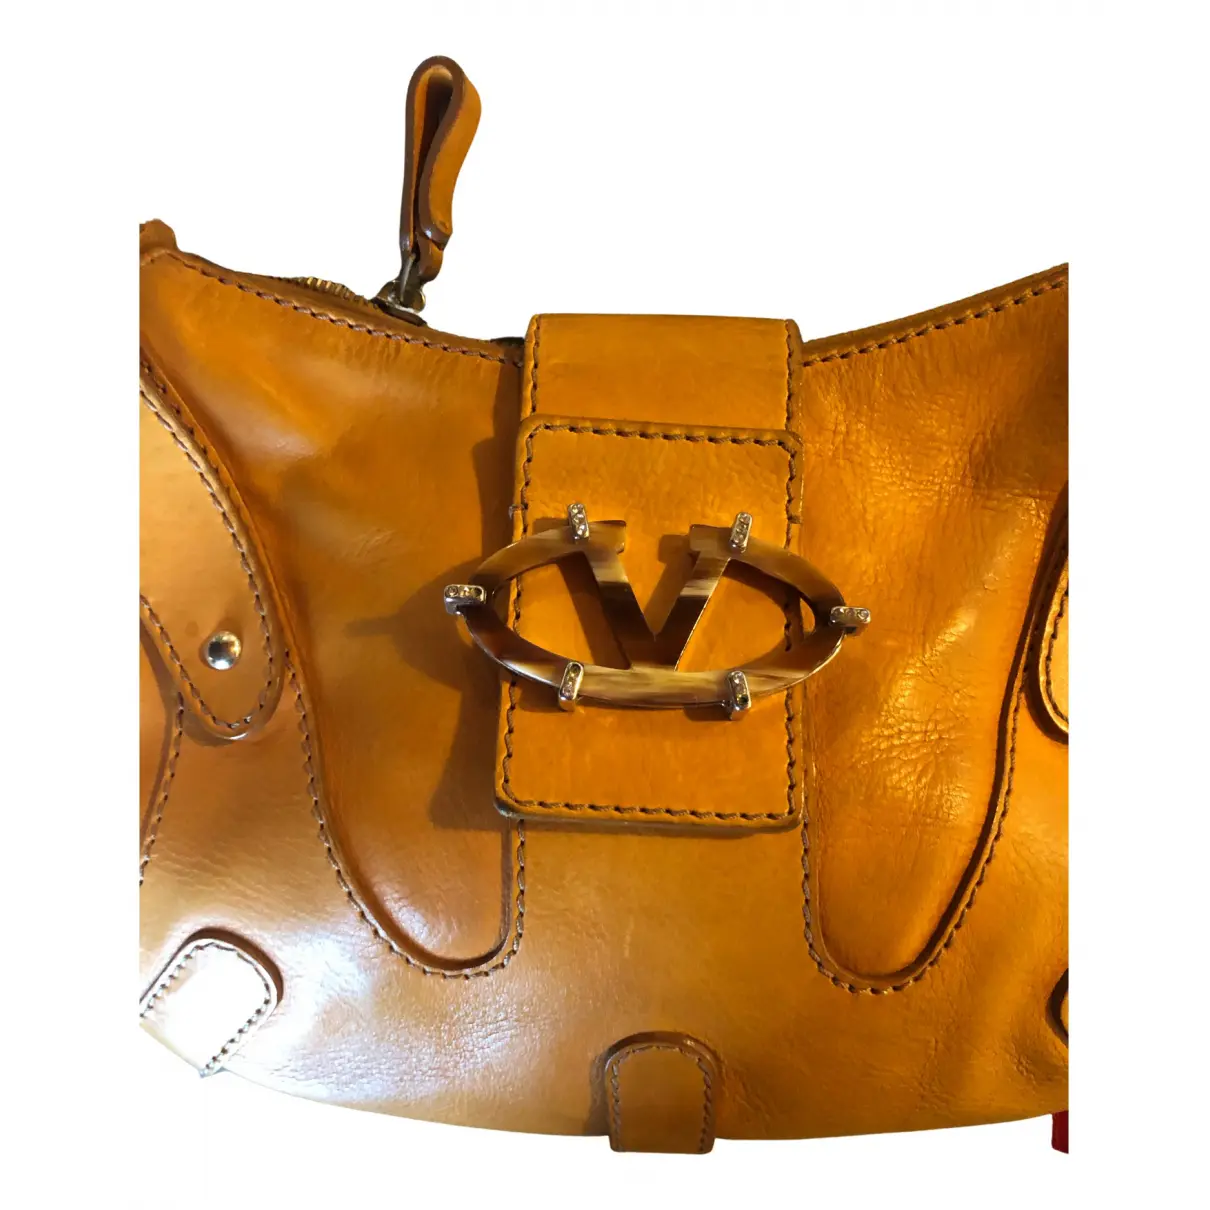 Buy Valentino Garavani VLogo leather handbag online